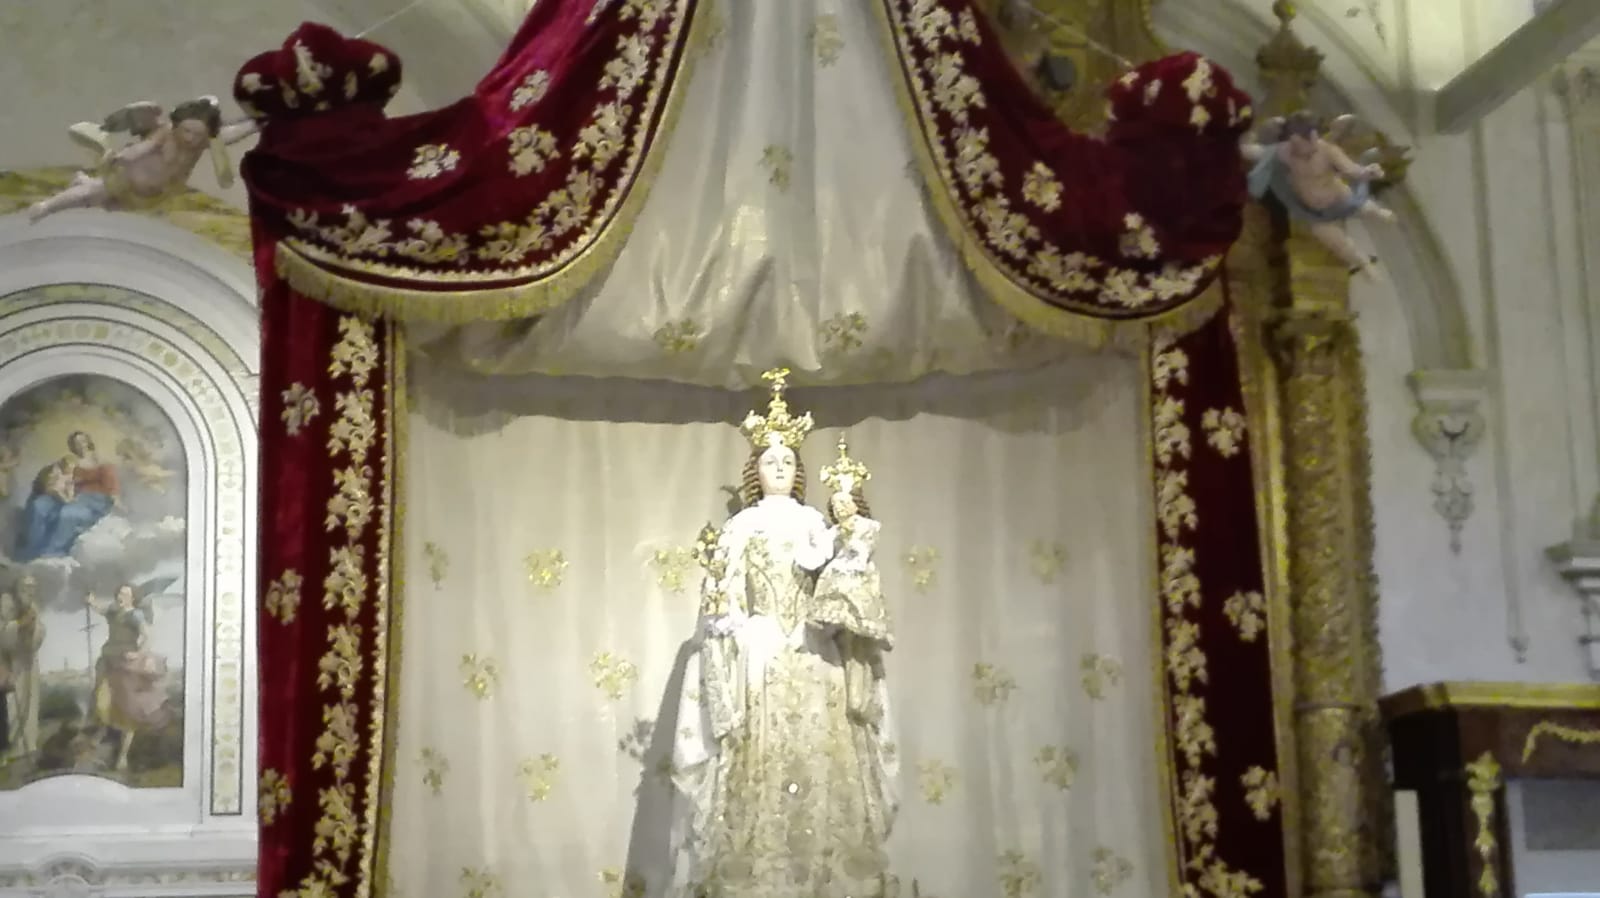 “Maria, la nostra Madonna della Bruna, proprio questa mattina ci insegna che tutti abbiamo bisogno di aprirci ad una visione di speranza.” L’omelia della Messa dei Pastori pronunciata da monsignor Caiazzo